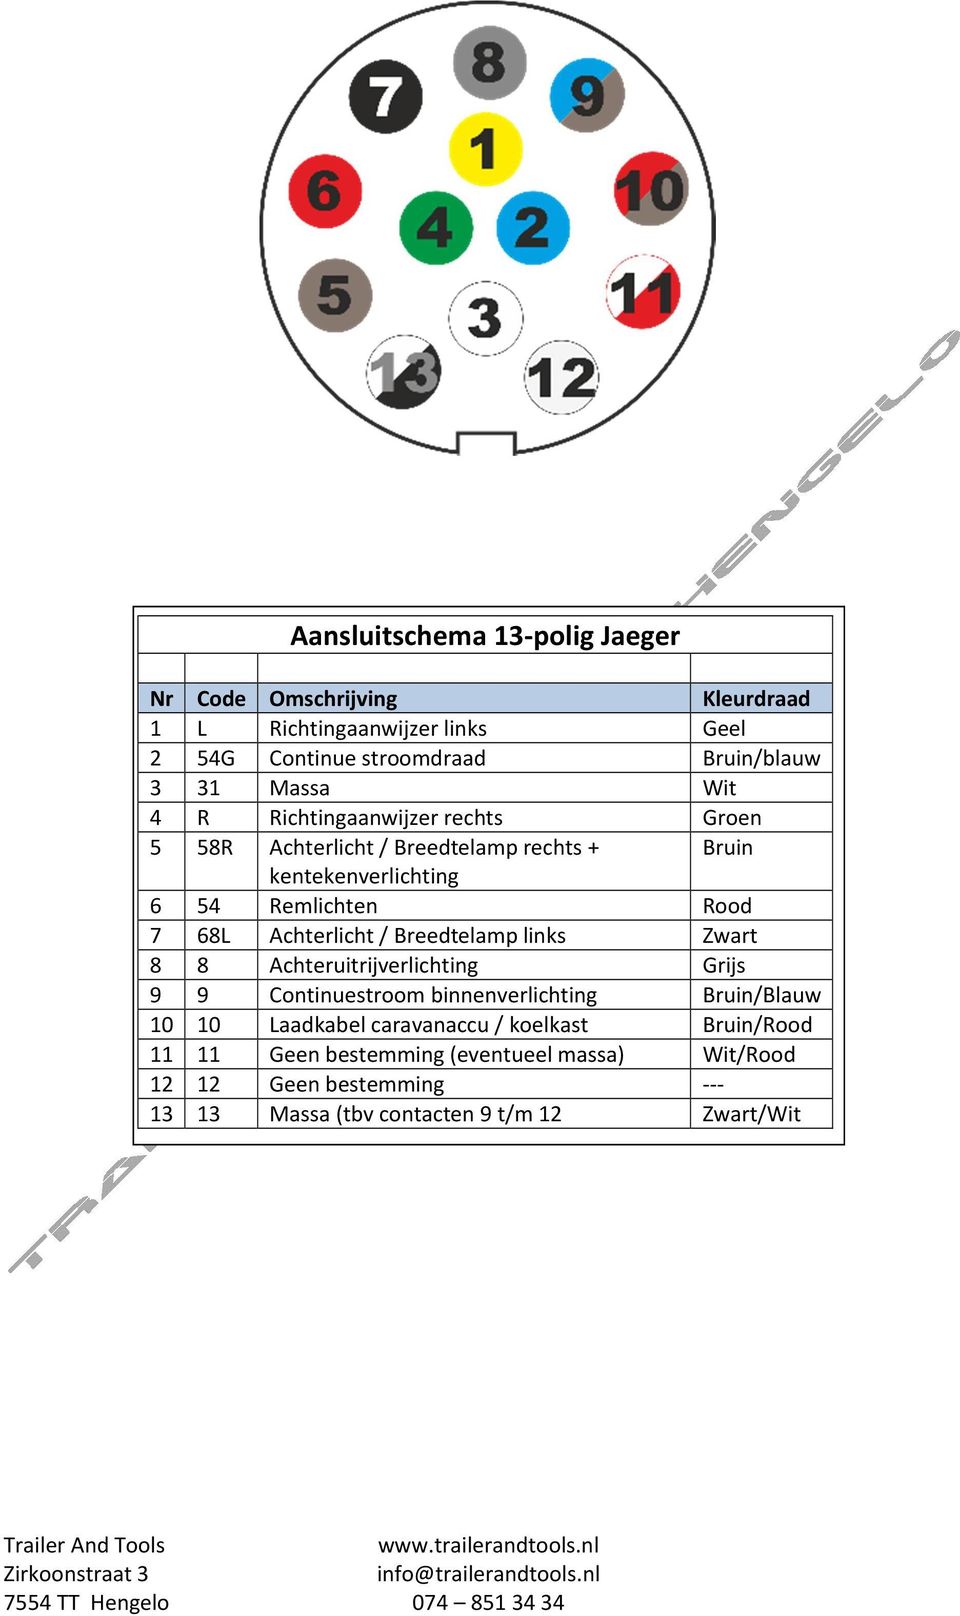 Groenten Onrustig prins Aansluitschema s aanhangers - PDF Free Download